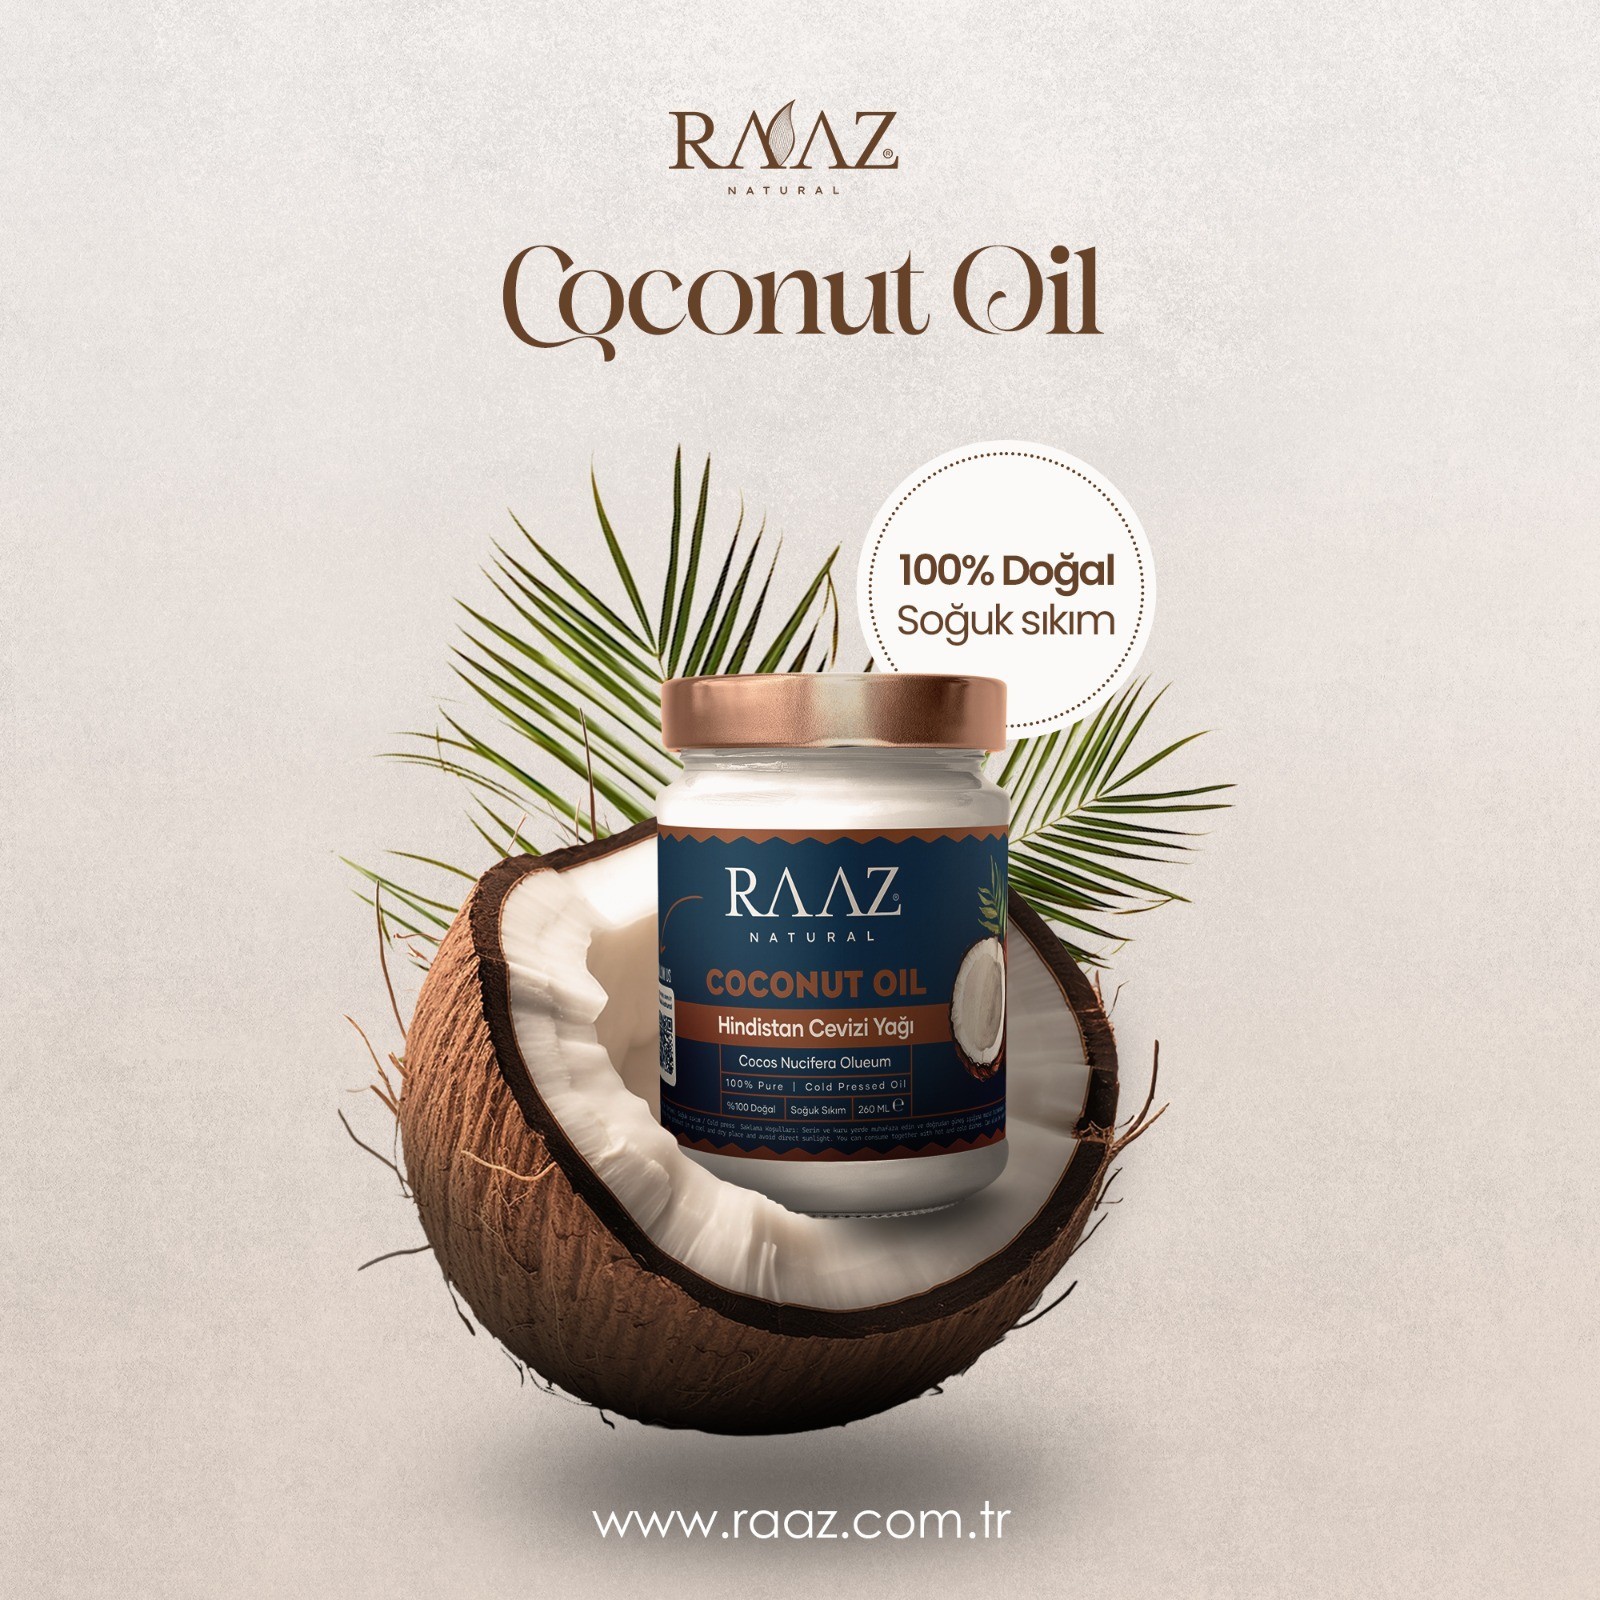 Hindistan cevizi yağı soğuk sıkım Coconut oil 260 ml